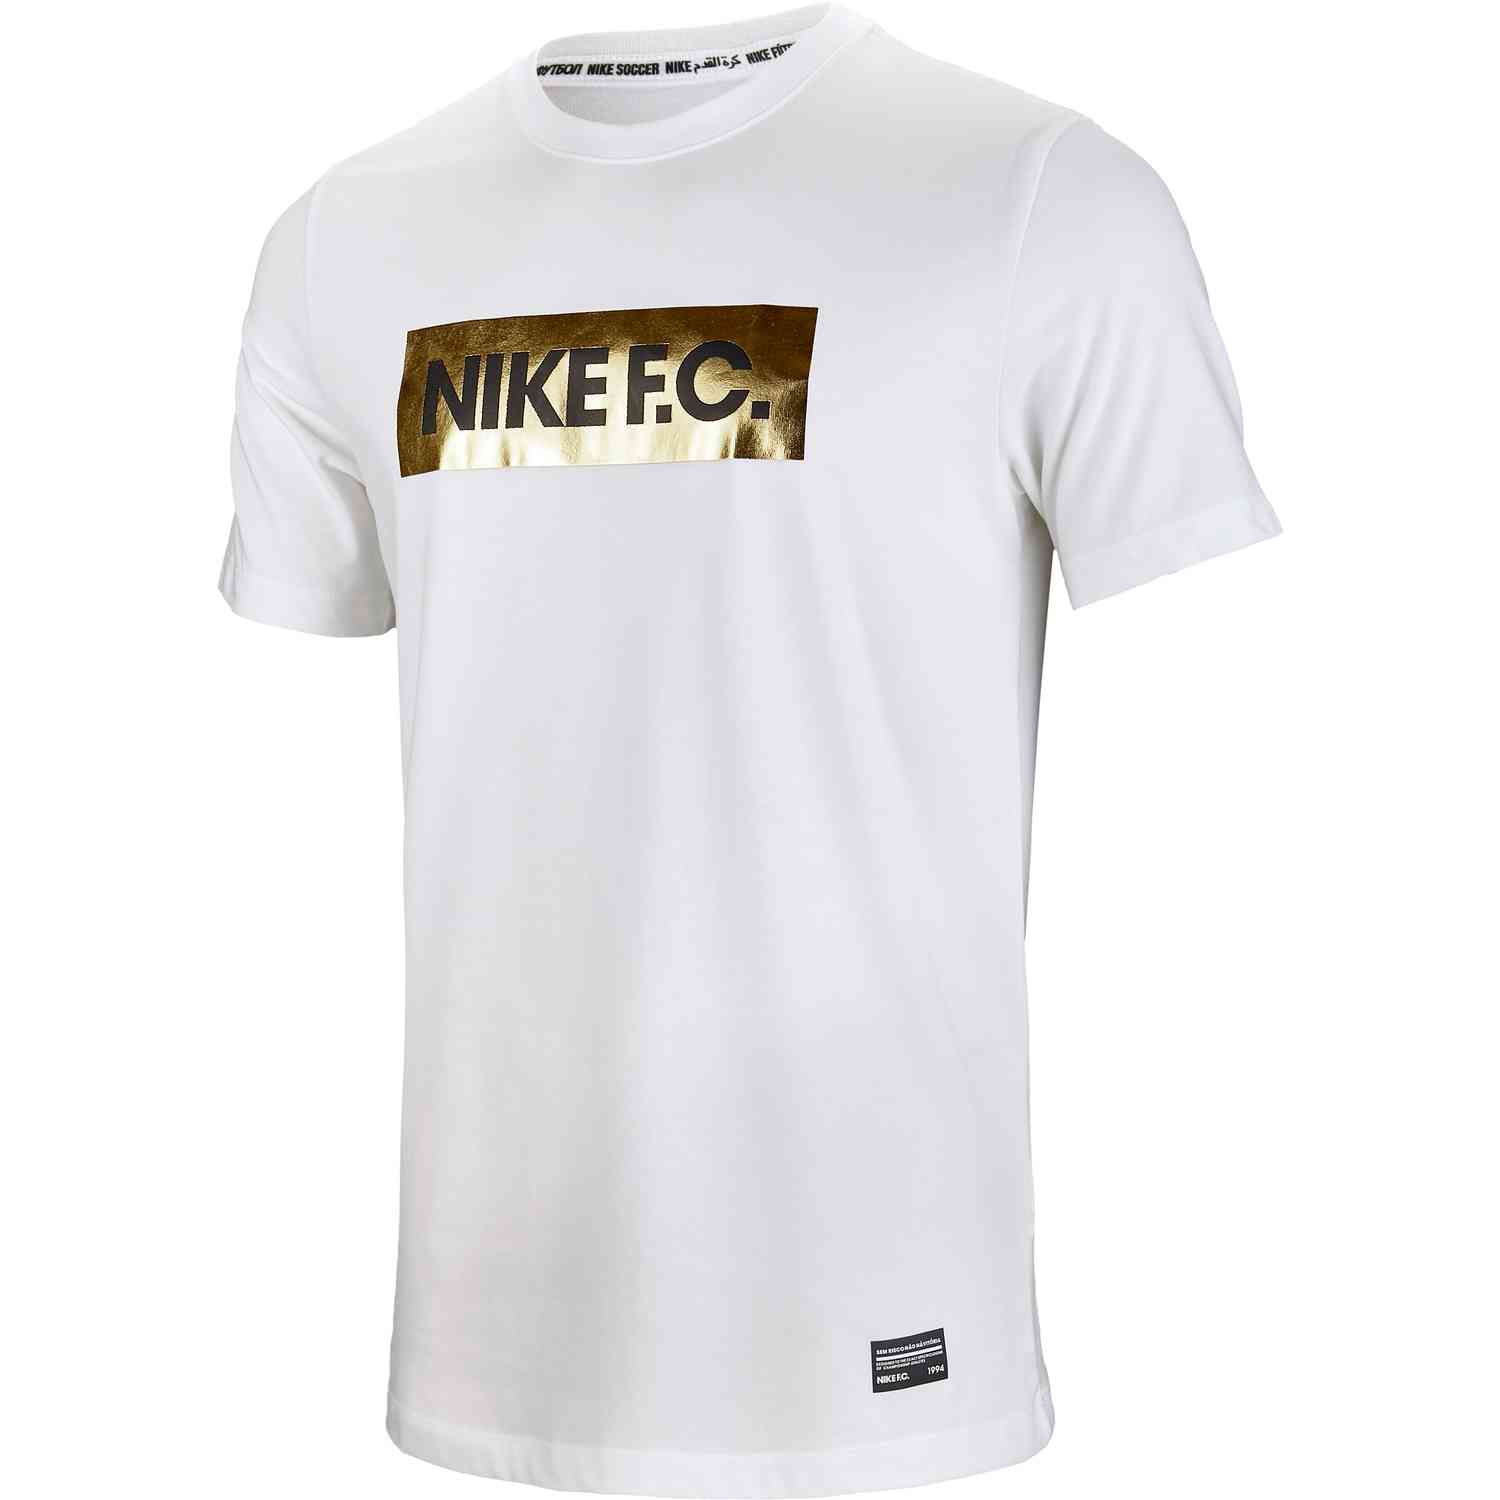 Componist Gesprekelijk Vrijgekomen Nike FC Gold Block Tee - White - SoccerPro